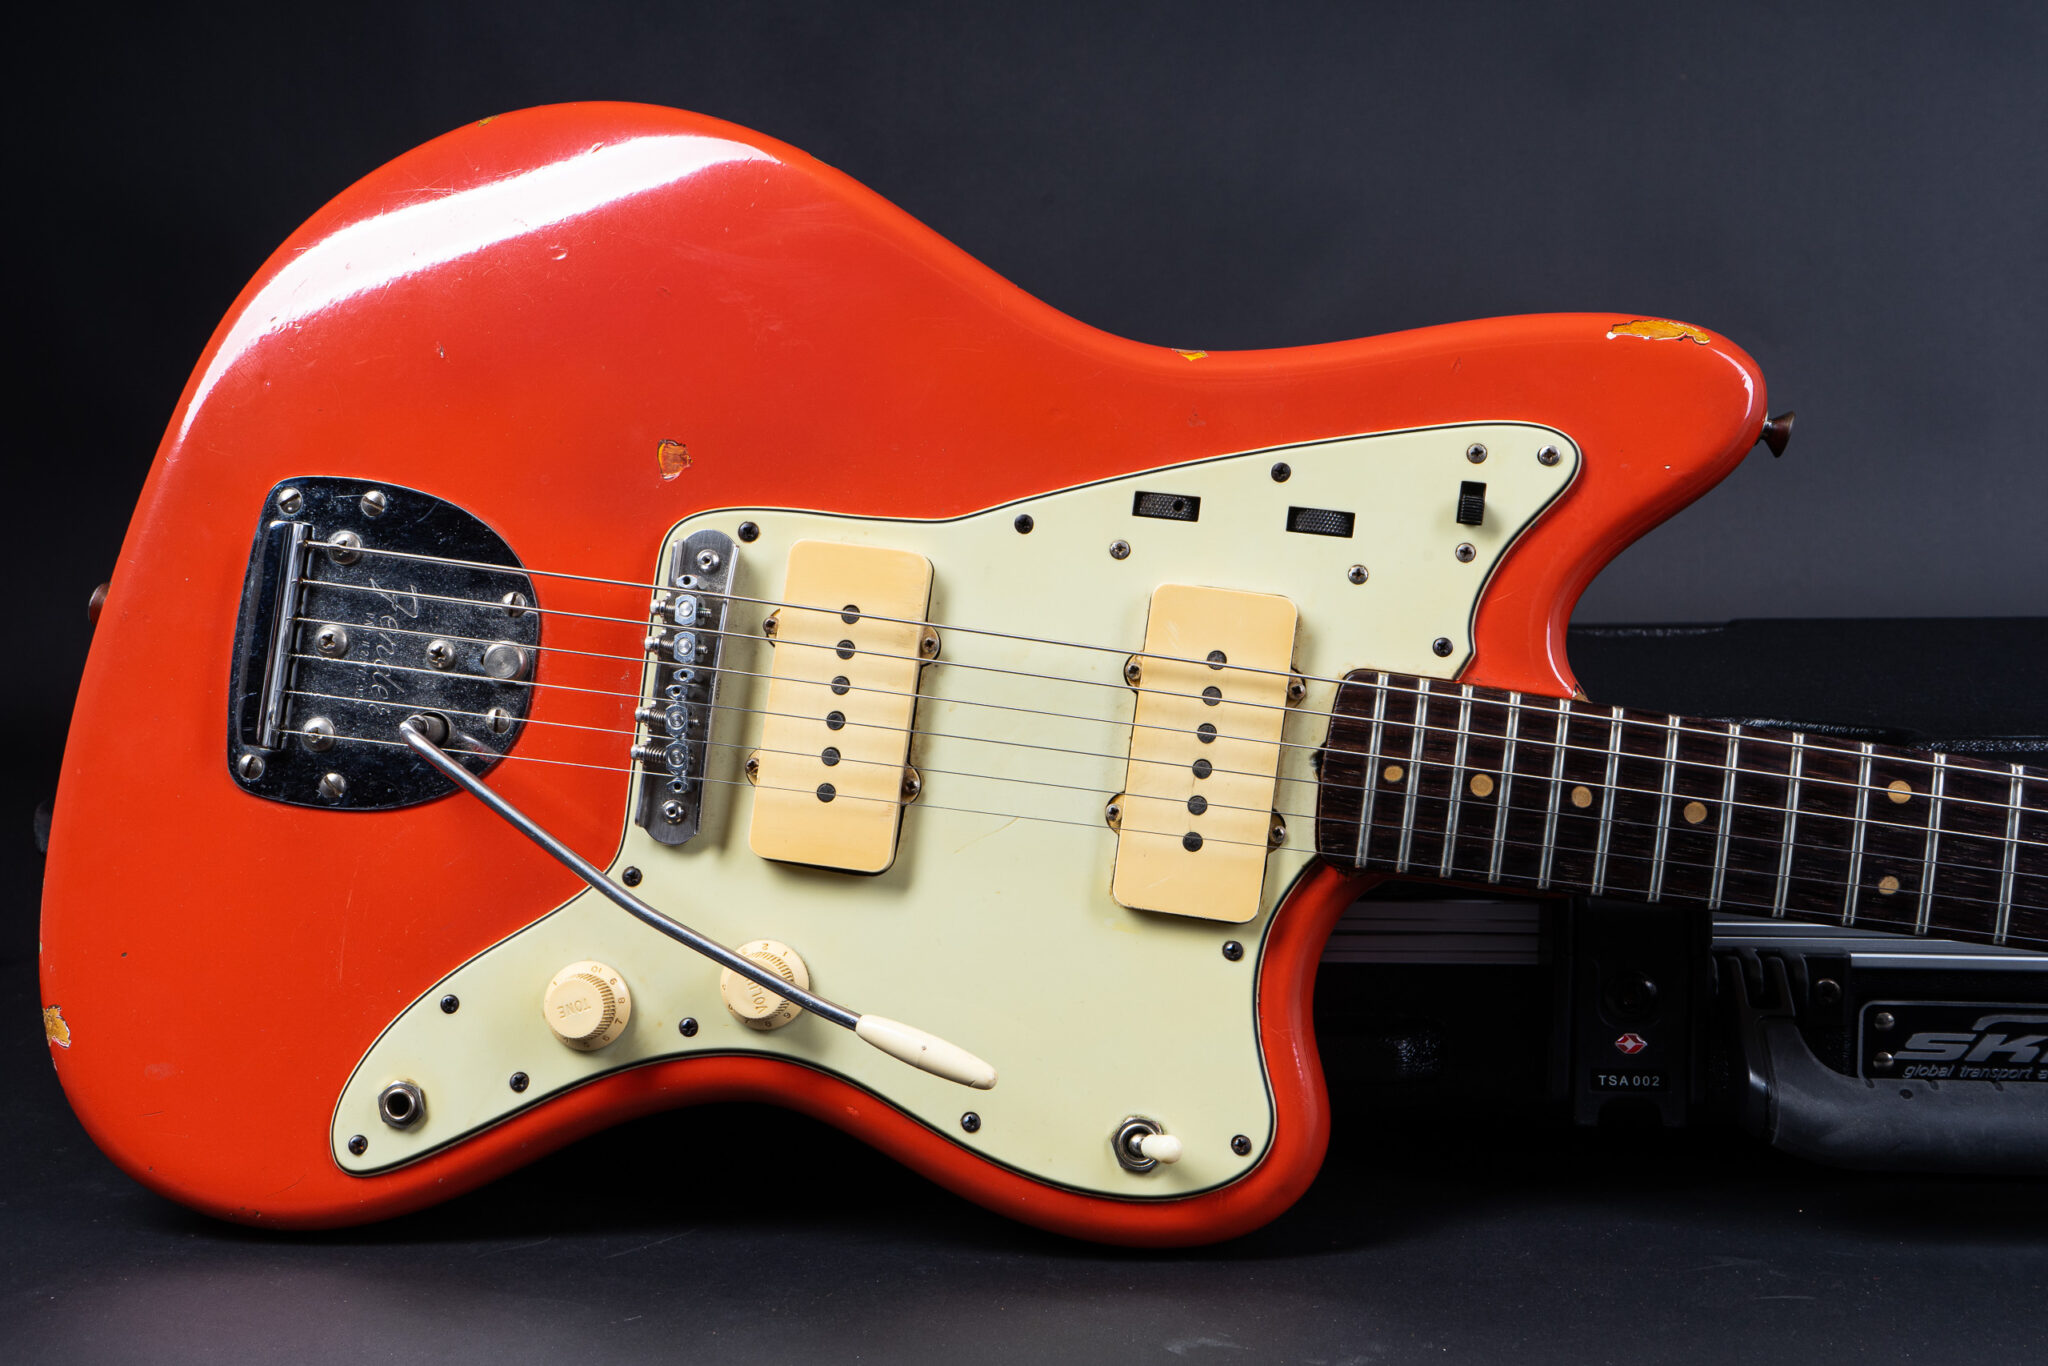 https://guitarpoint.de/app/uploads/products/1963-fender-jazzmaster-fiesta-red-refin/1963-Fender-Jazzmaster-Fiesta-Red-L26925-9-2048x1366.jpg